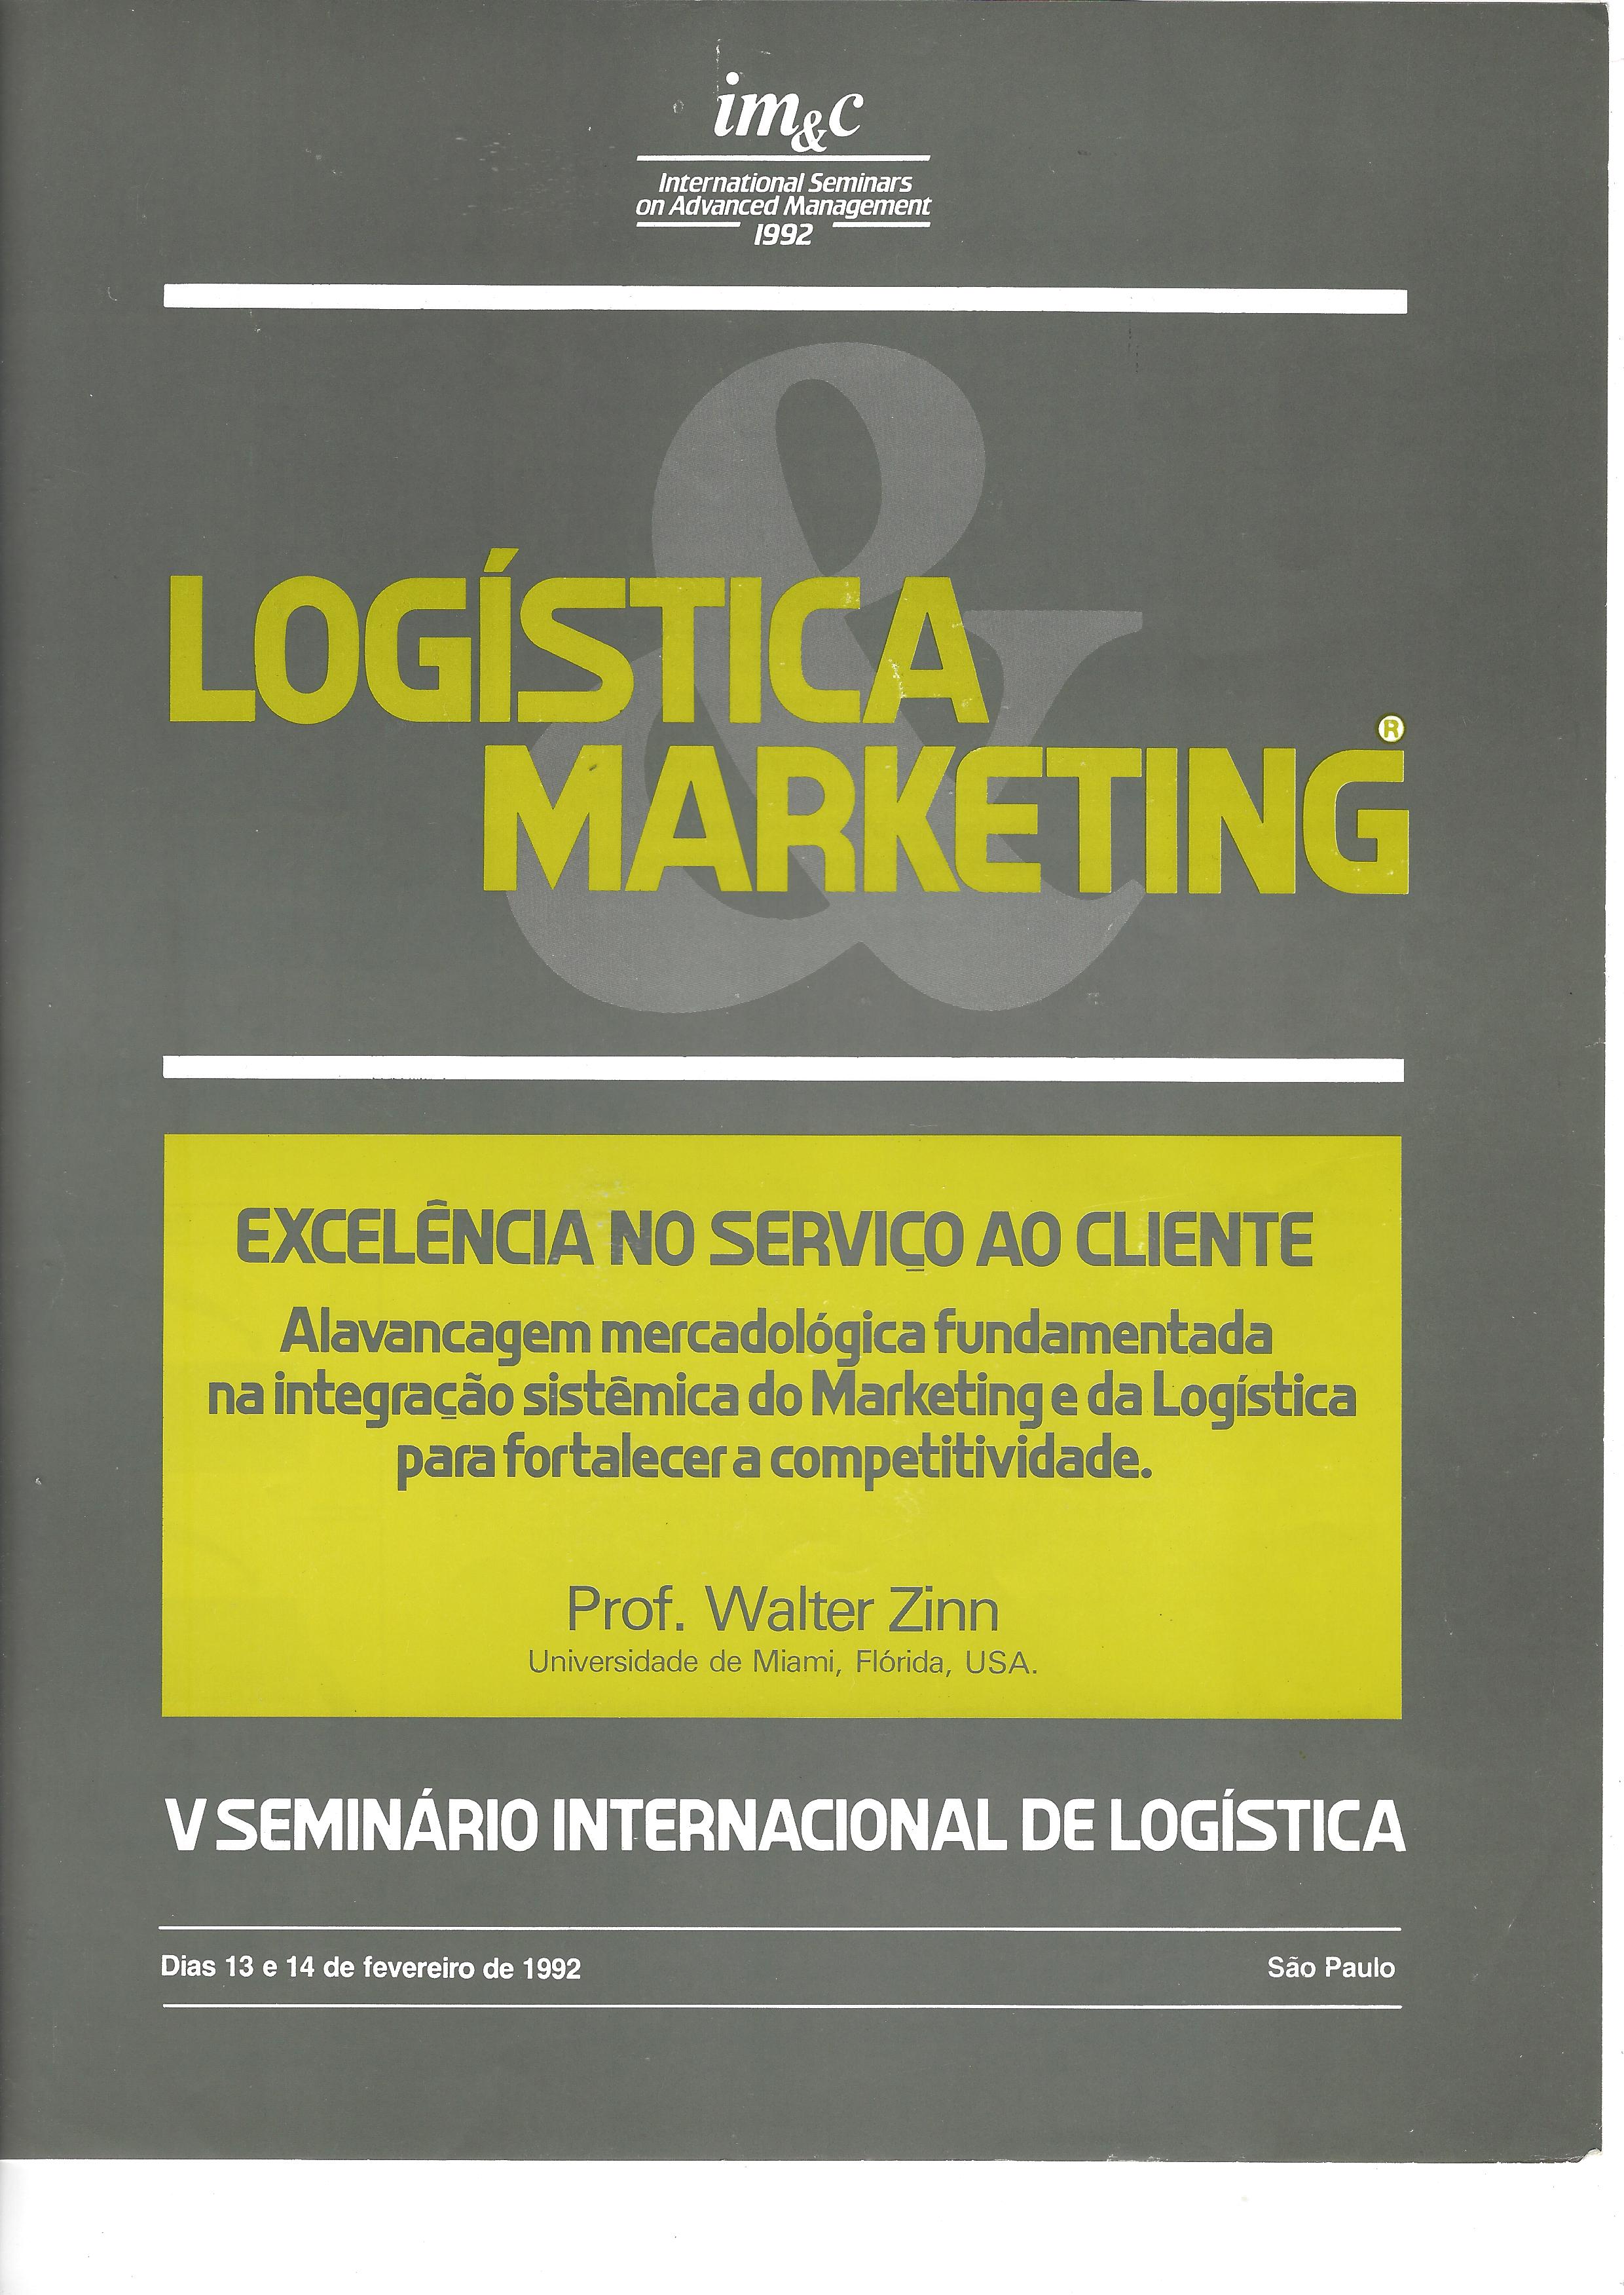 logística marketing – excelência no serviço ao cliente – V seminário internacional de logística